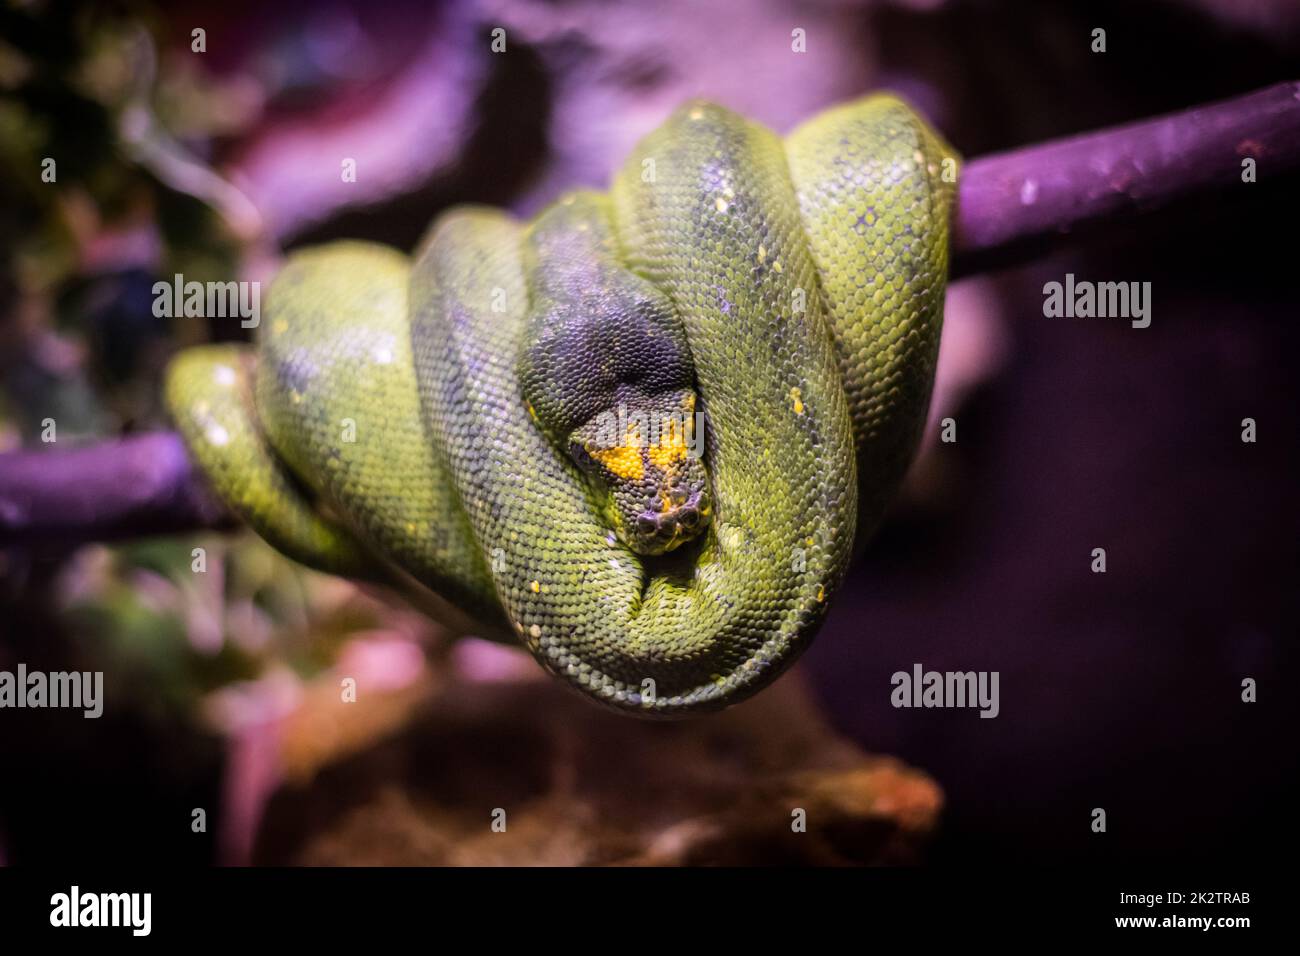 Green Boa snake in a tree Stock Photo